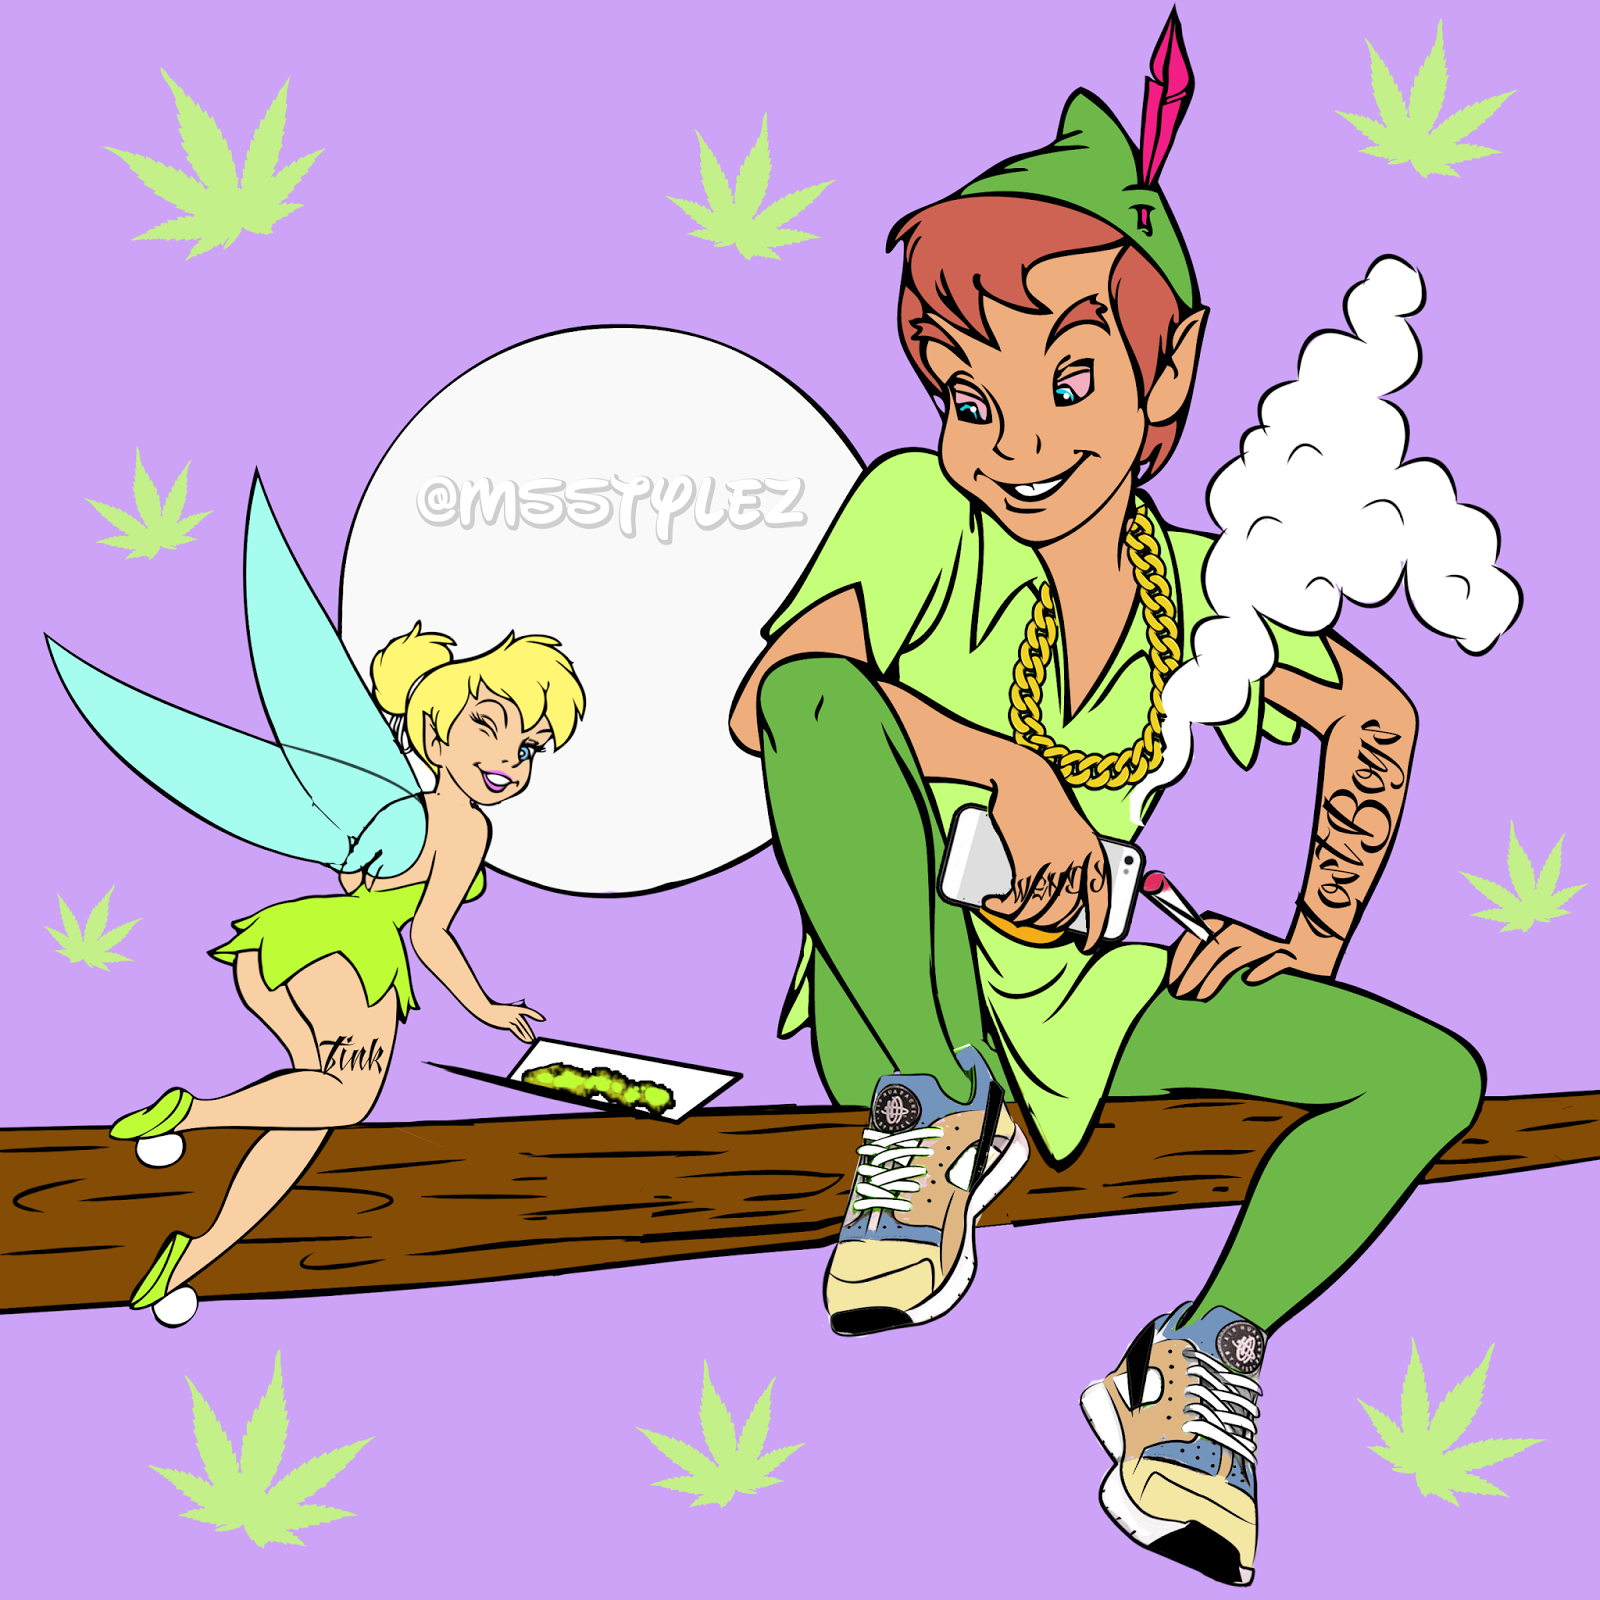 disney princesses smoking